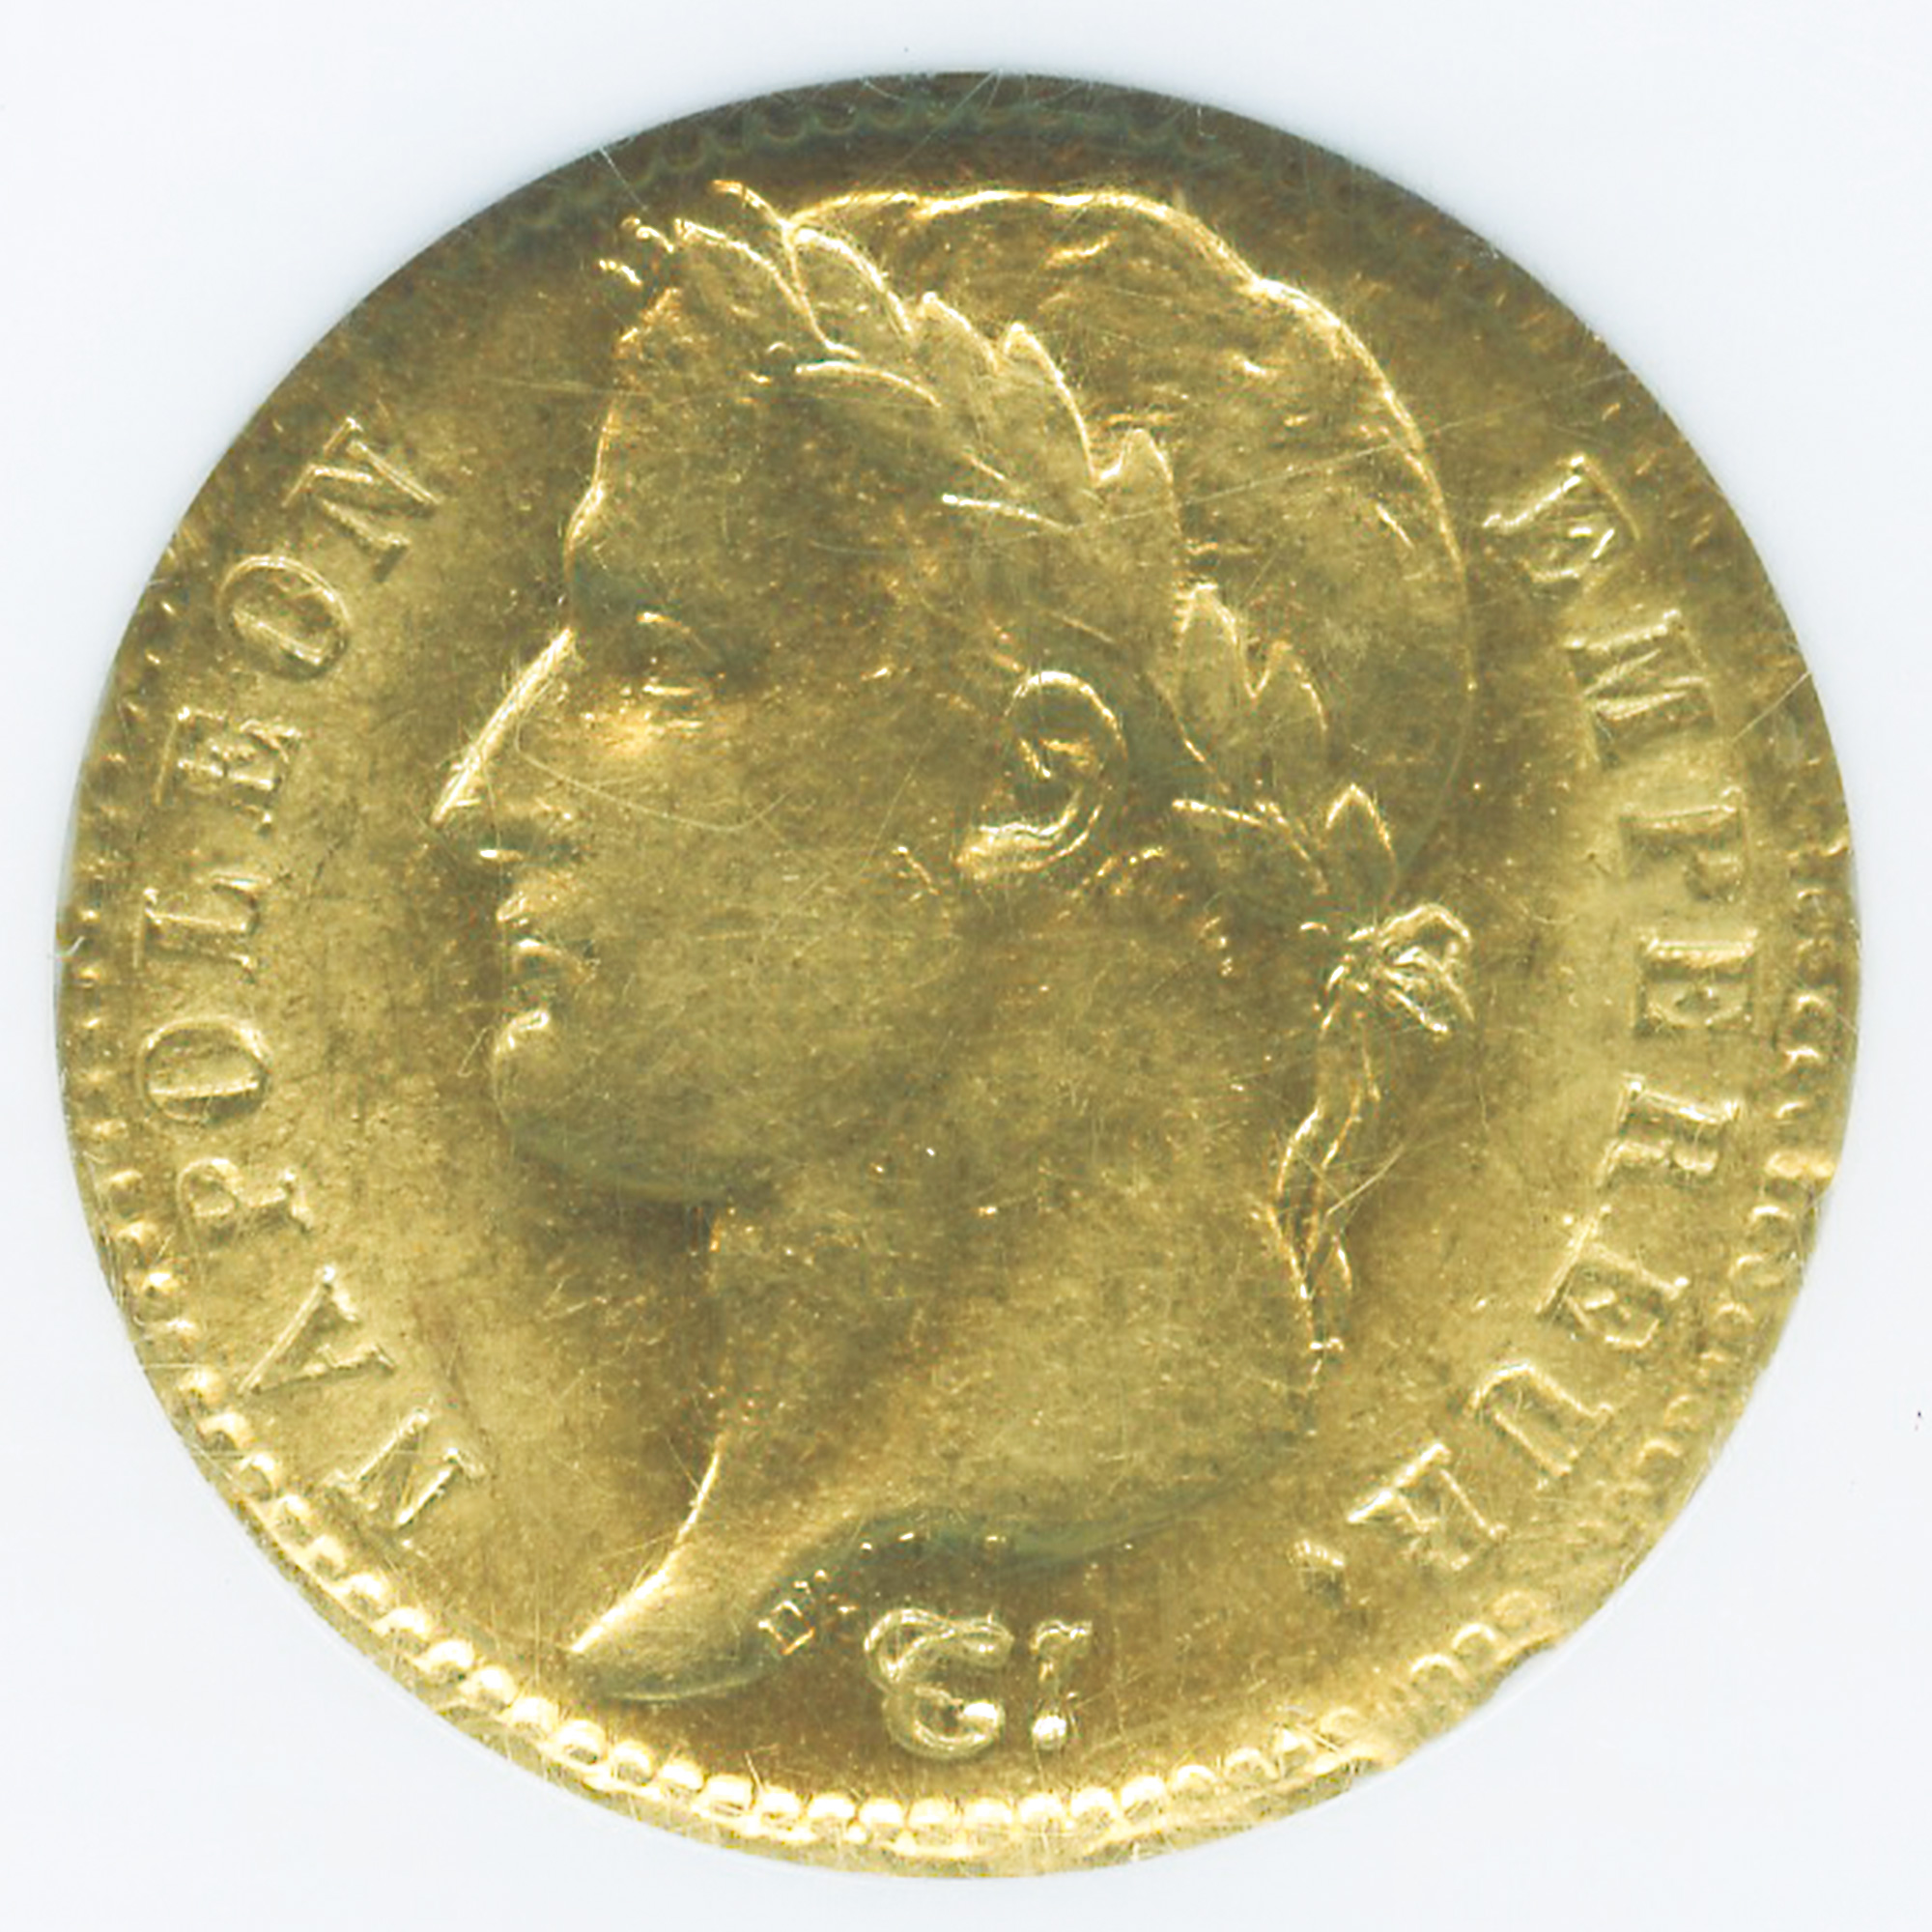 フランス 20フラン金貨 ナポレオン1世 有冠タイプ 1811 パリミント AU58